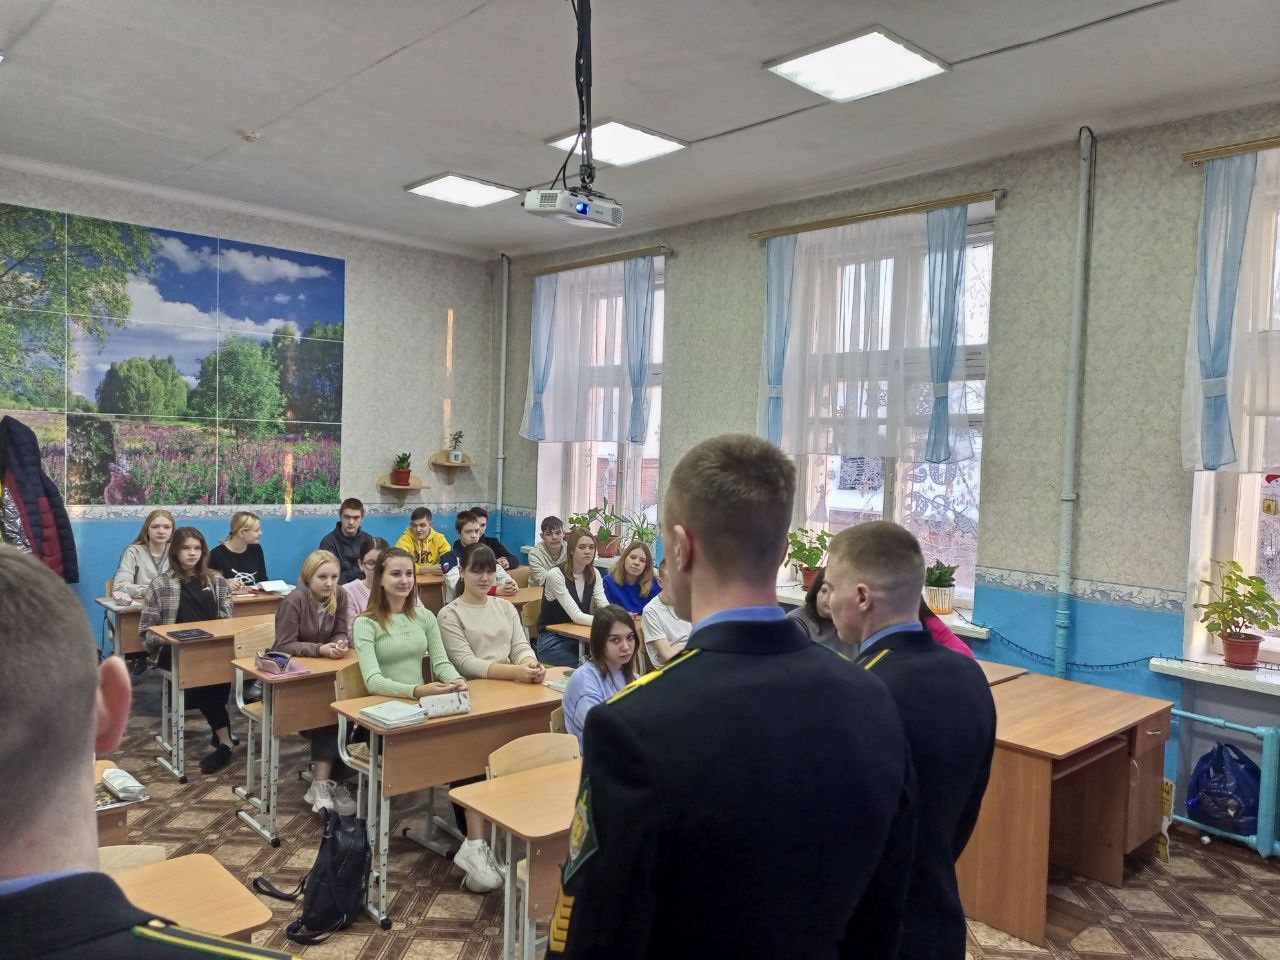 14 декабря прошла встреча у 10-11 кл. с представителями Курганского пограничного института Федеральной службы безопасности Российской Федерации.